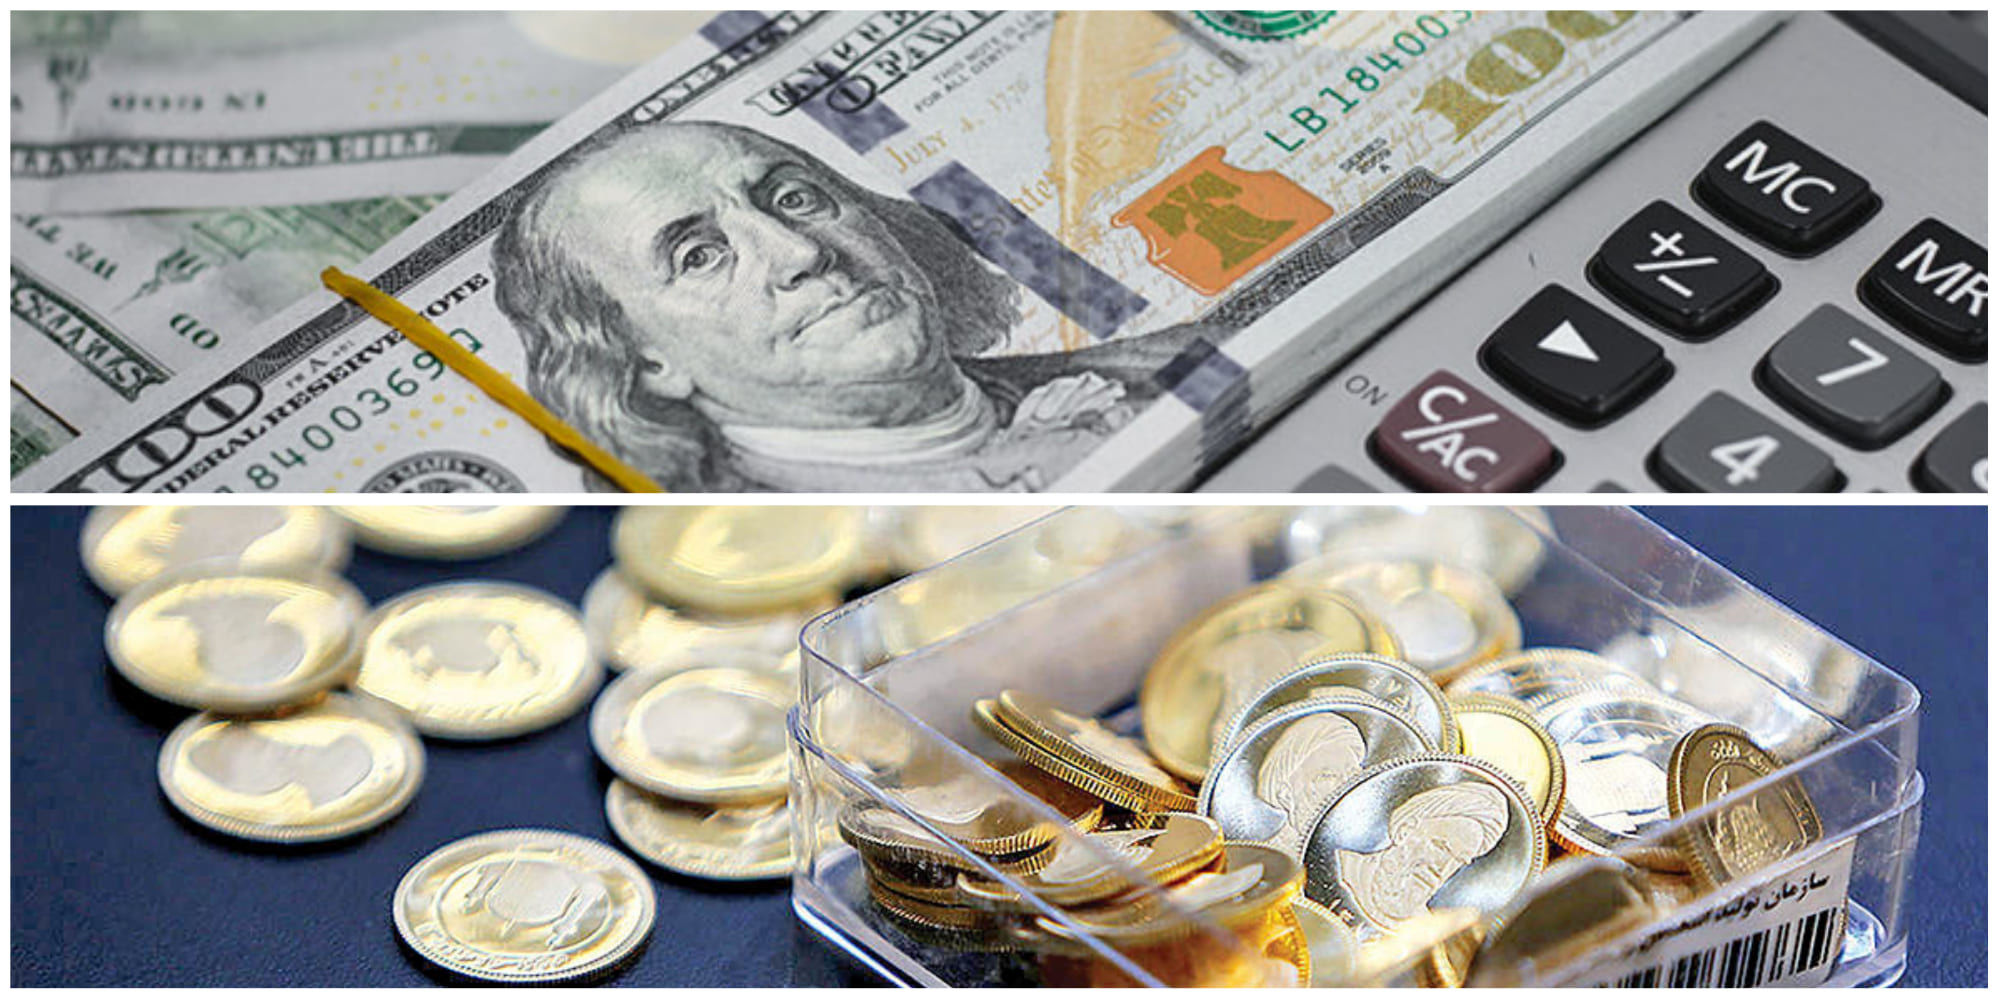  سد مقاومتی  قیمت دلار شکست/ افزایش همزمان قیمت طلا و سکه